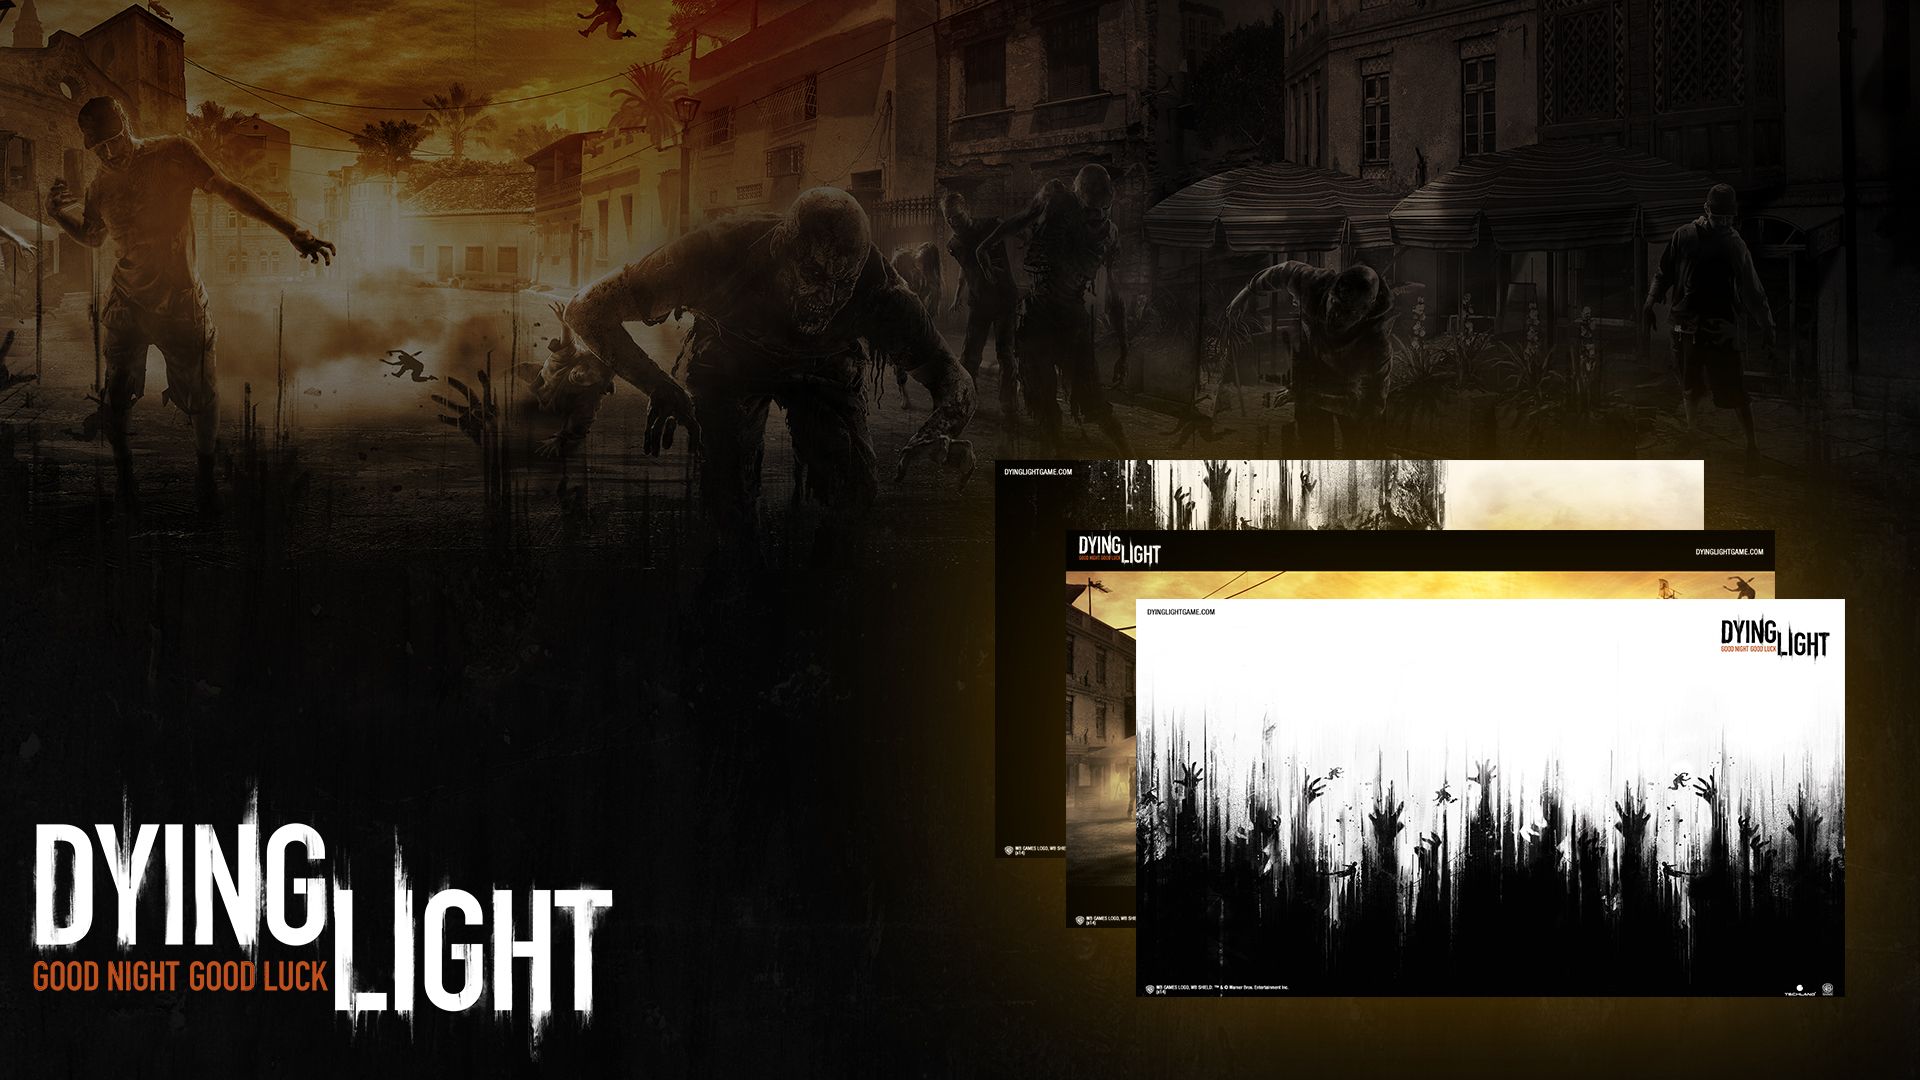 Dying Light Wallpaper on Steam